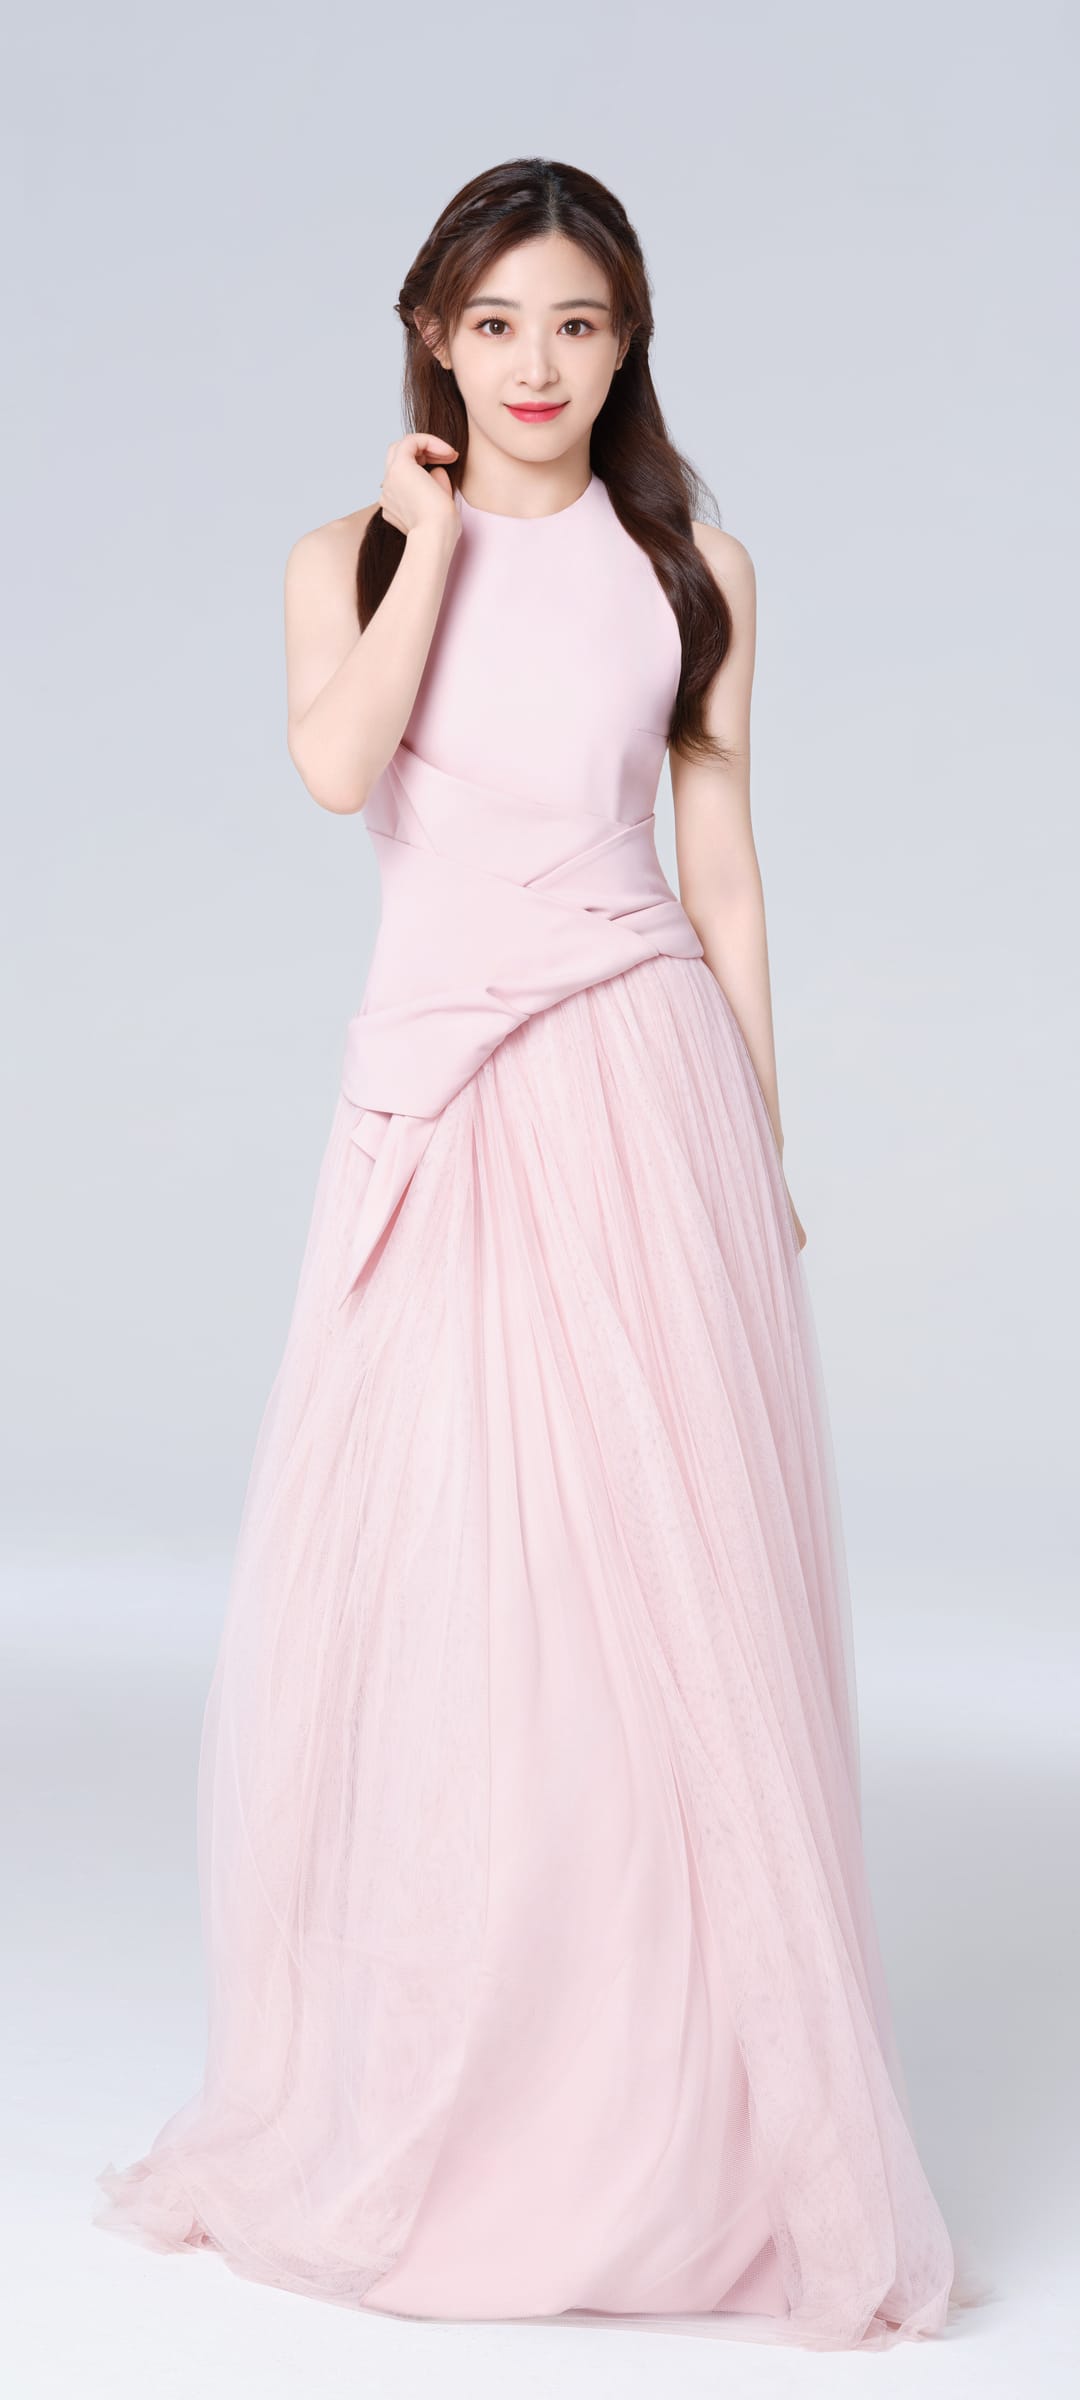 张含韵粉色蕾丝长裙变身公主古典高贵手机壁纸